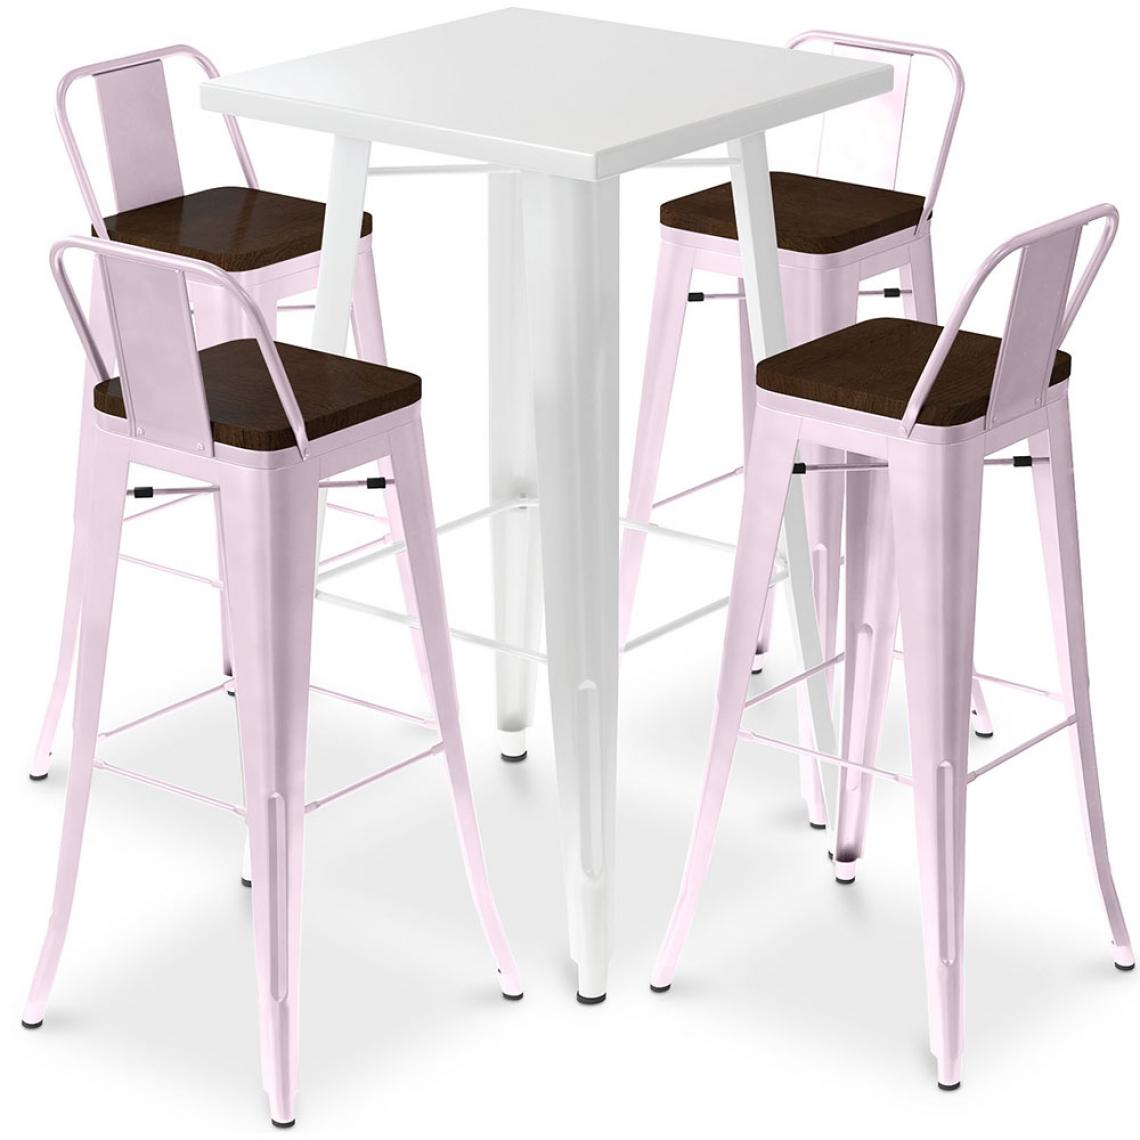 Iconik Interior - Table de bar blanche + 4 tabourets de bar en acier - Ensemble Bistrot Stylix Design industriel - Nouvelle édition Rose pâle - Tabourets